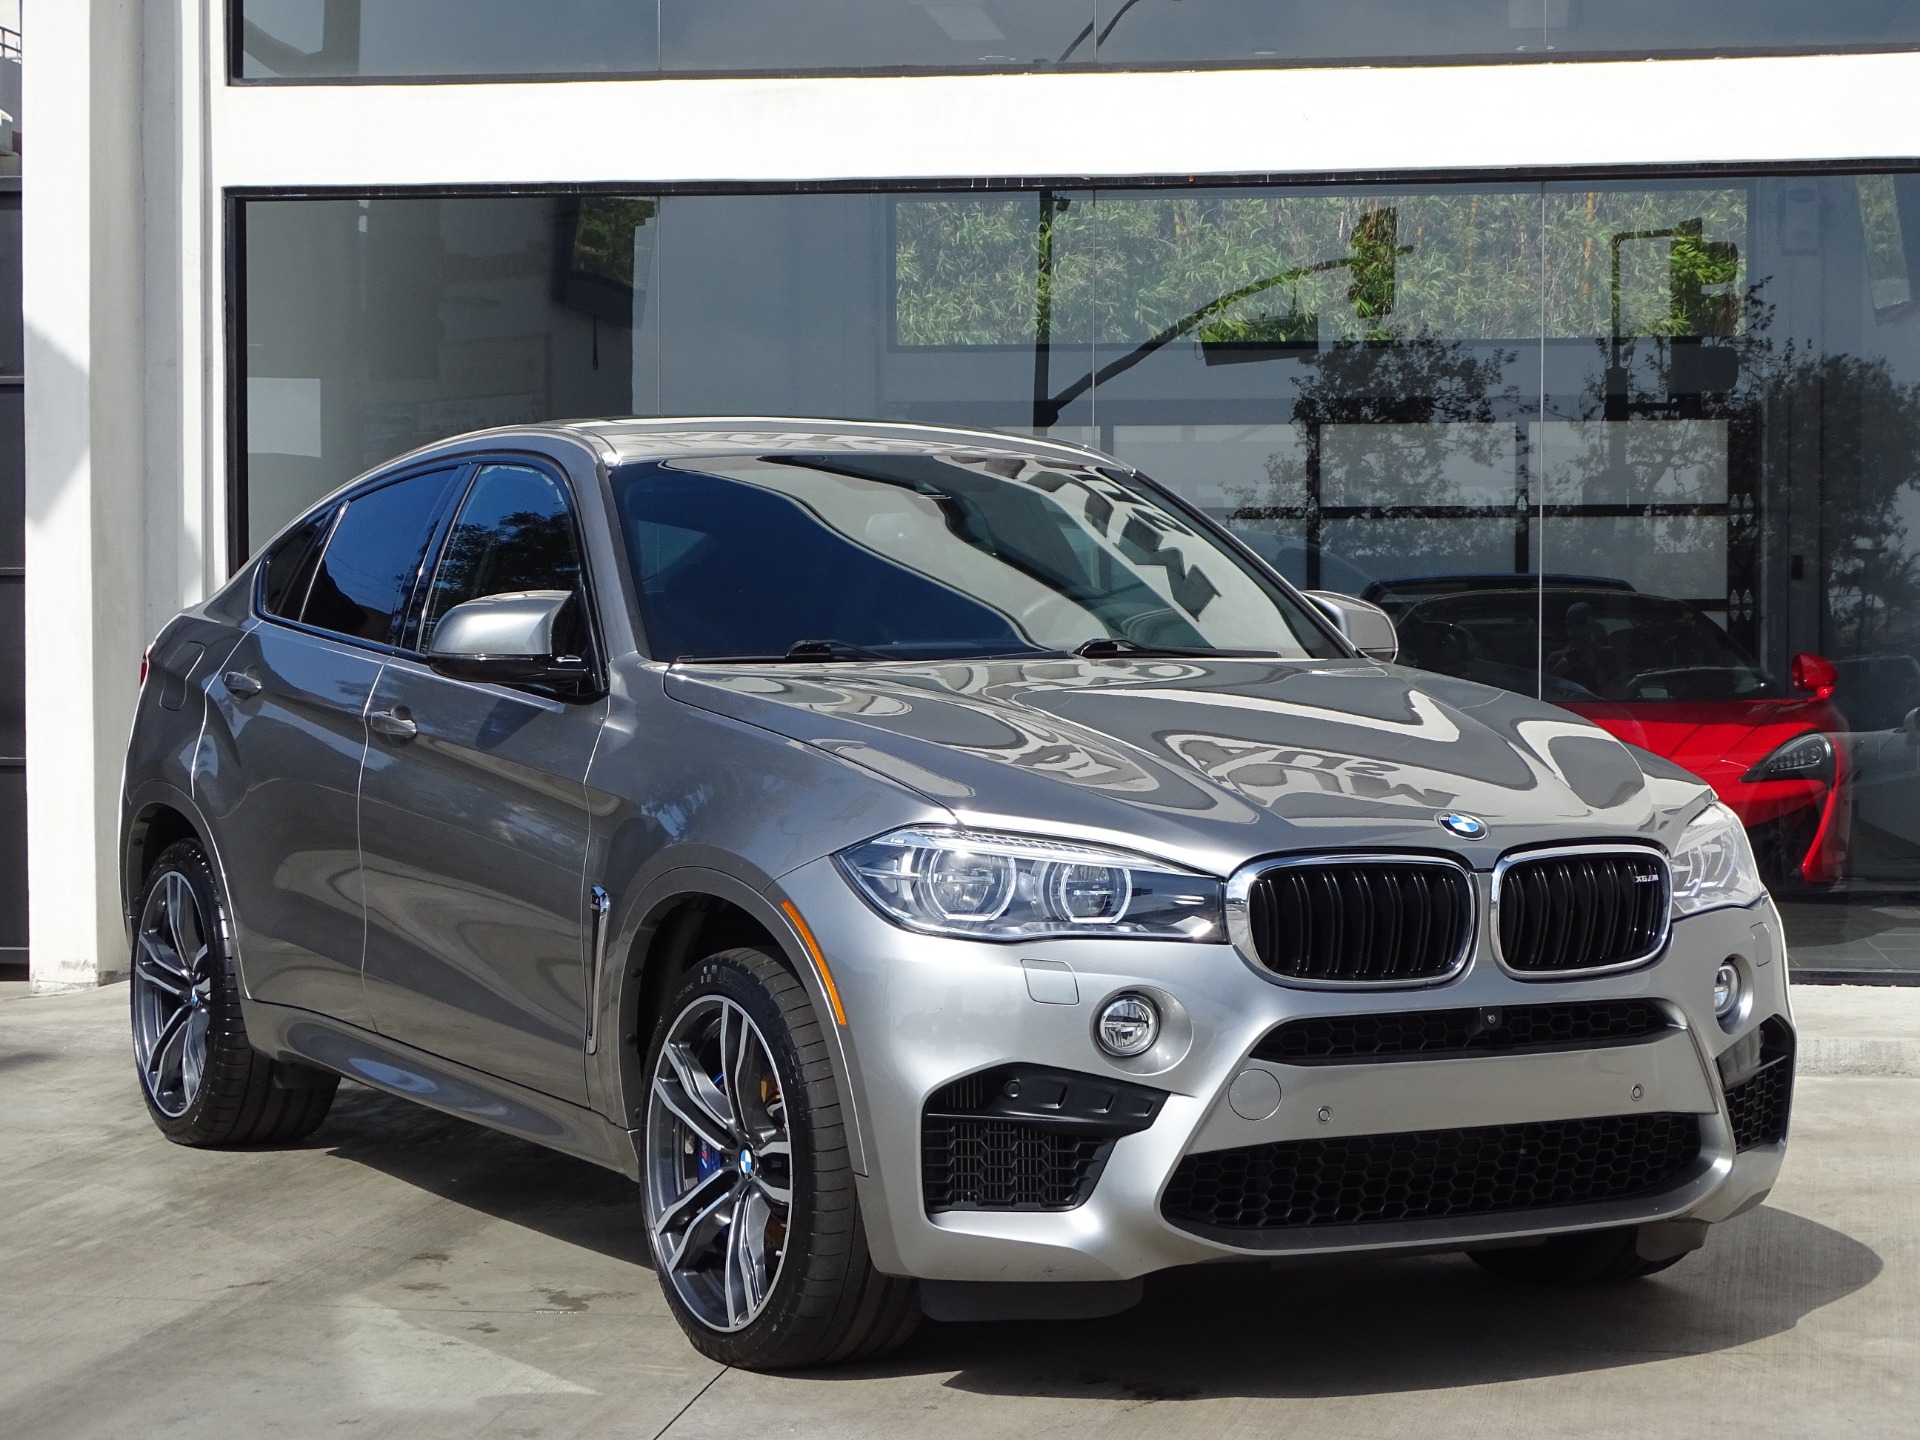 2017 BMW X6 M Stock # 7111 for sale near Redondo Beach, CA | CA BMW Dealer